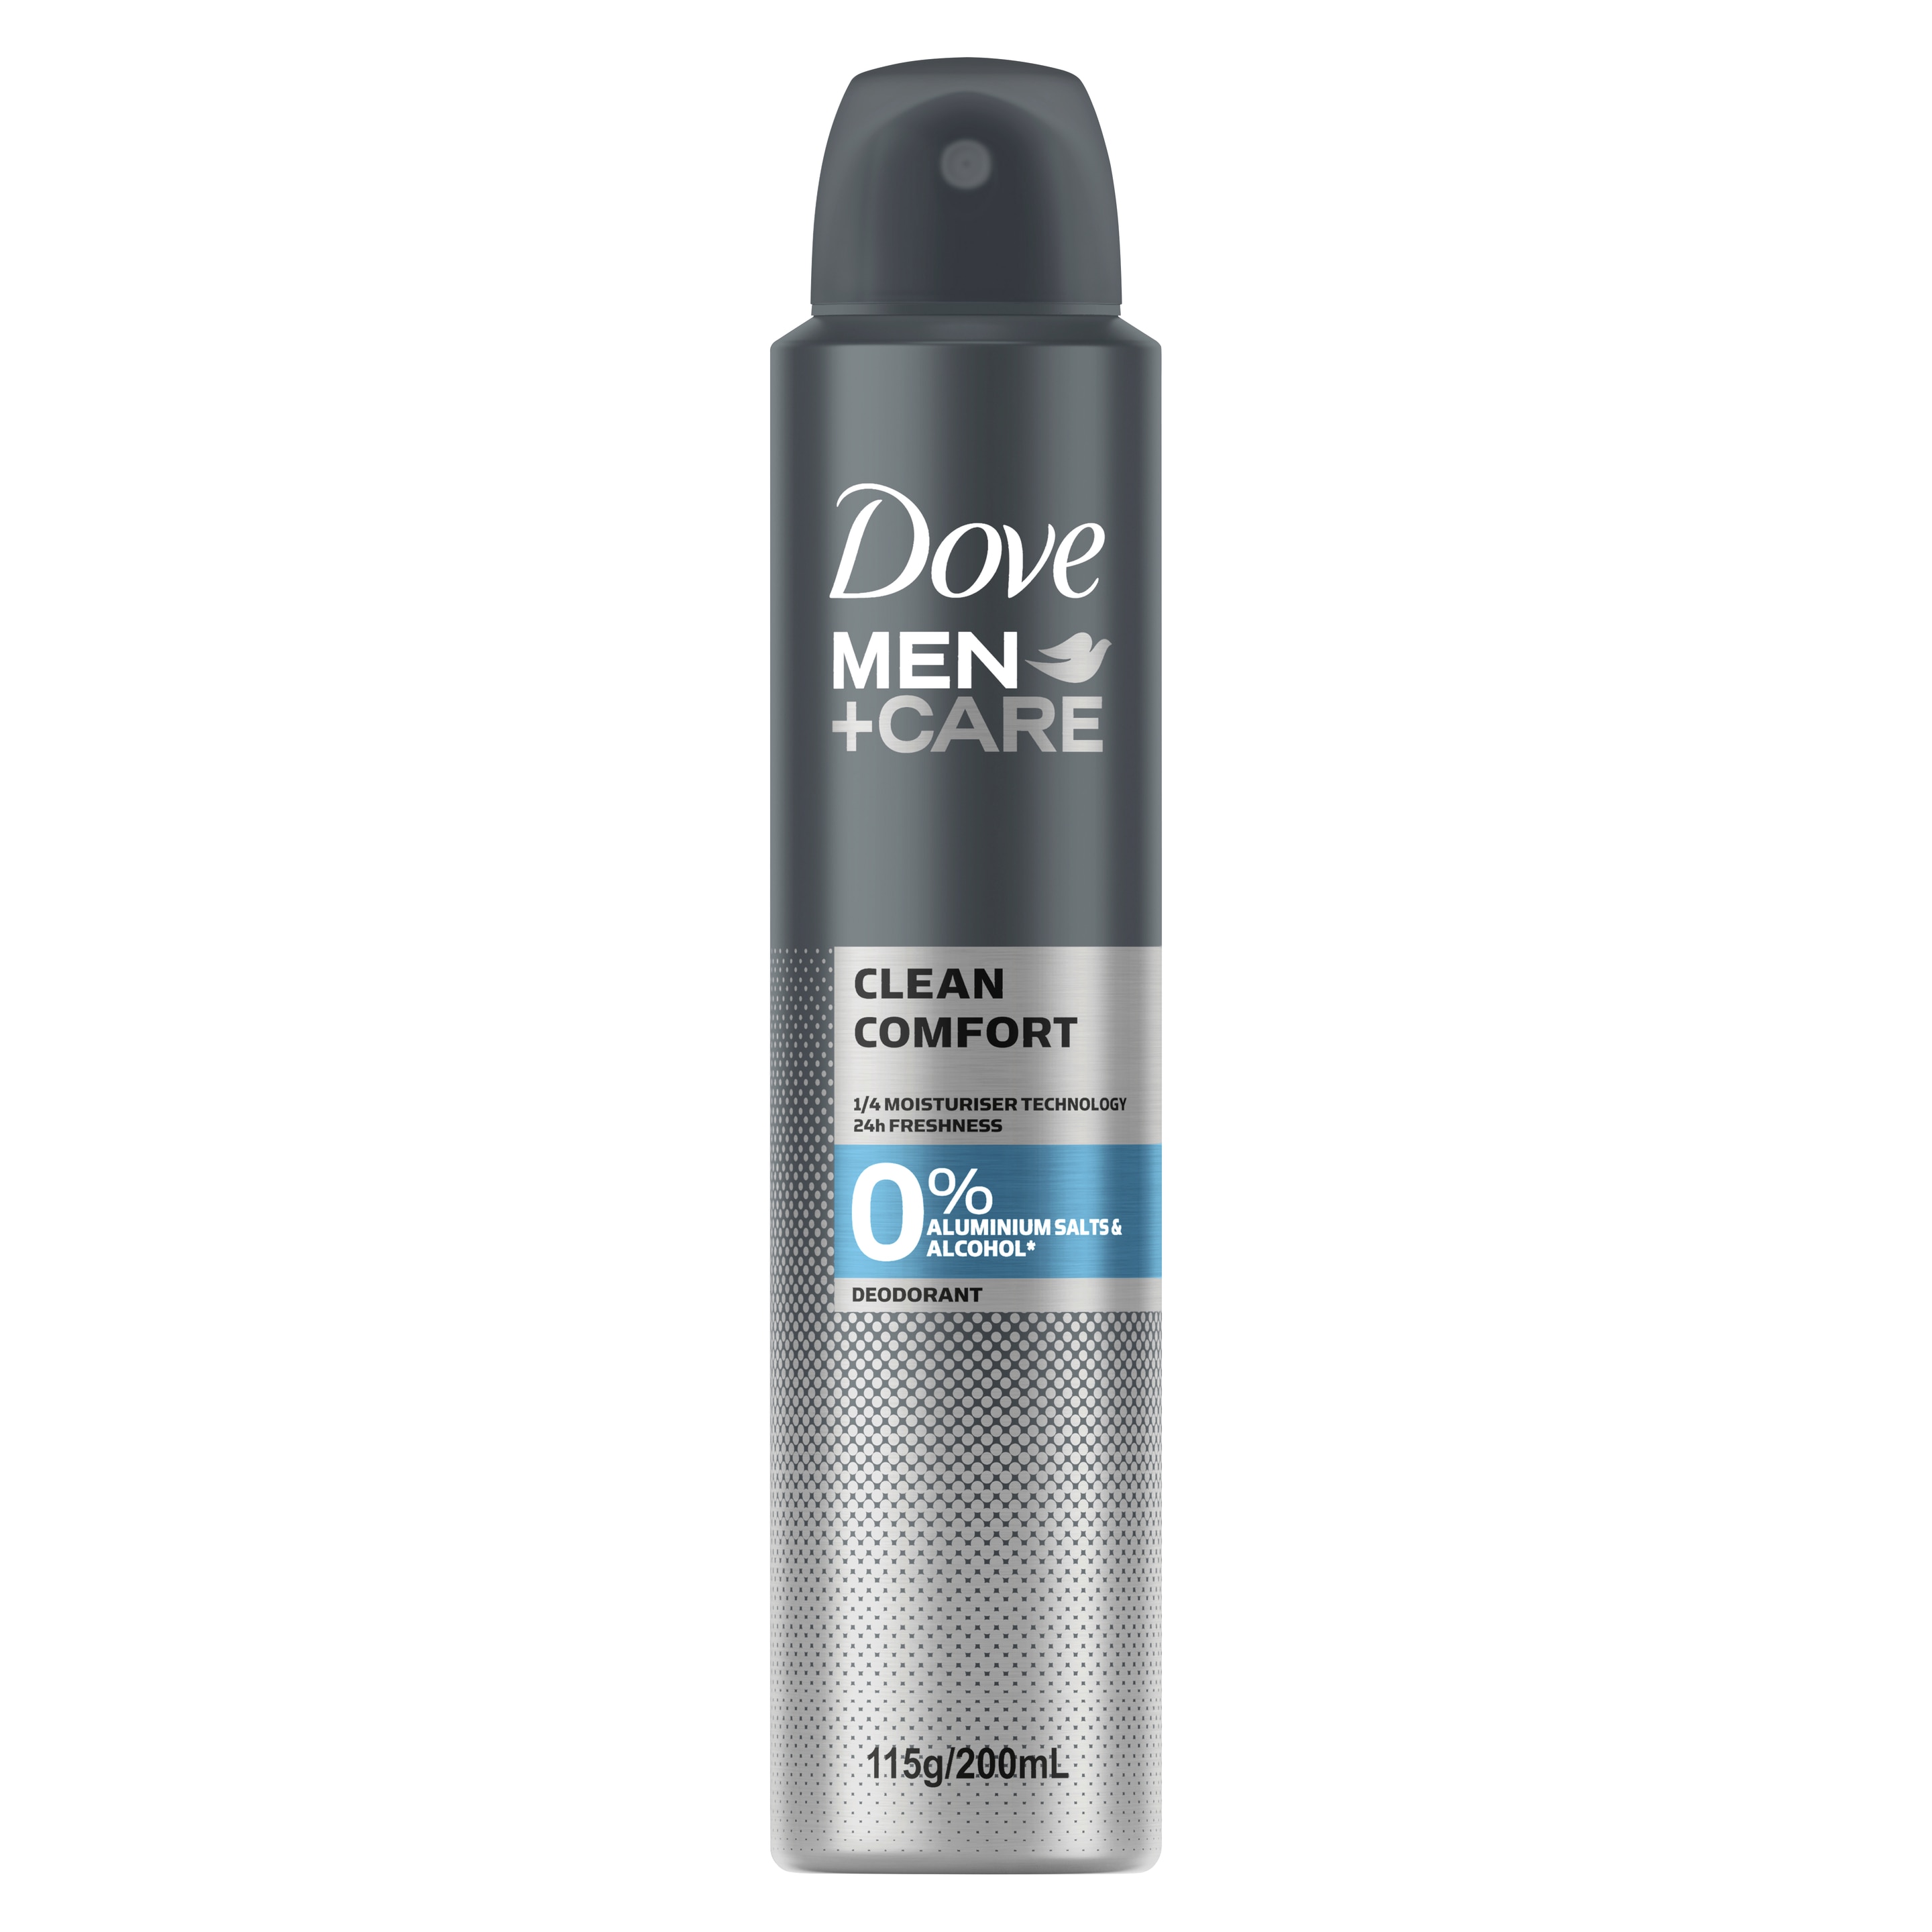 Dove Men+Care 0% Aluminium Aerosol Deodorant Clean Comfort 200mL Text